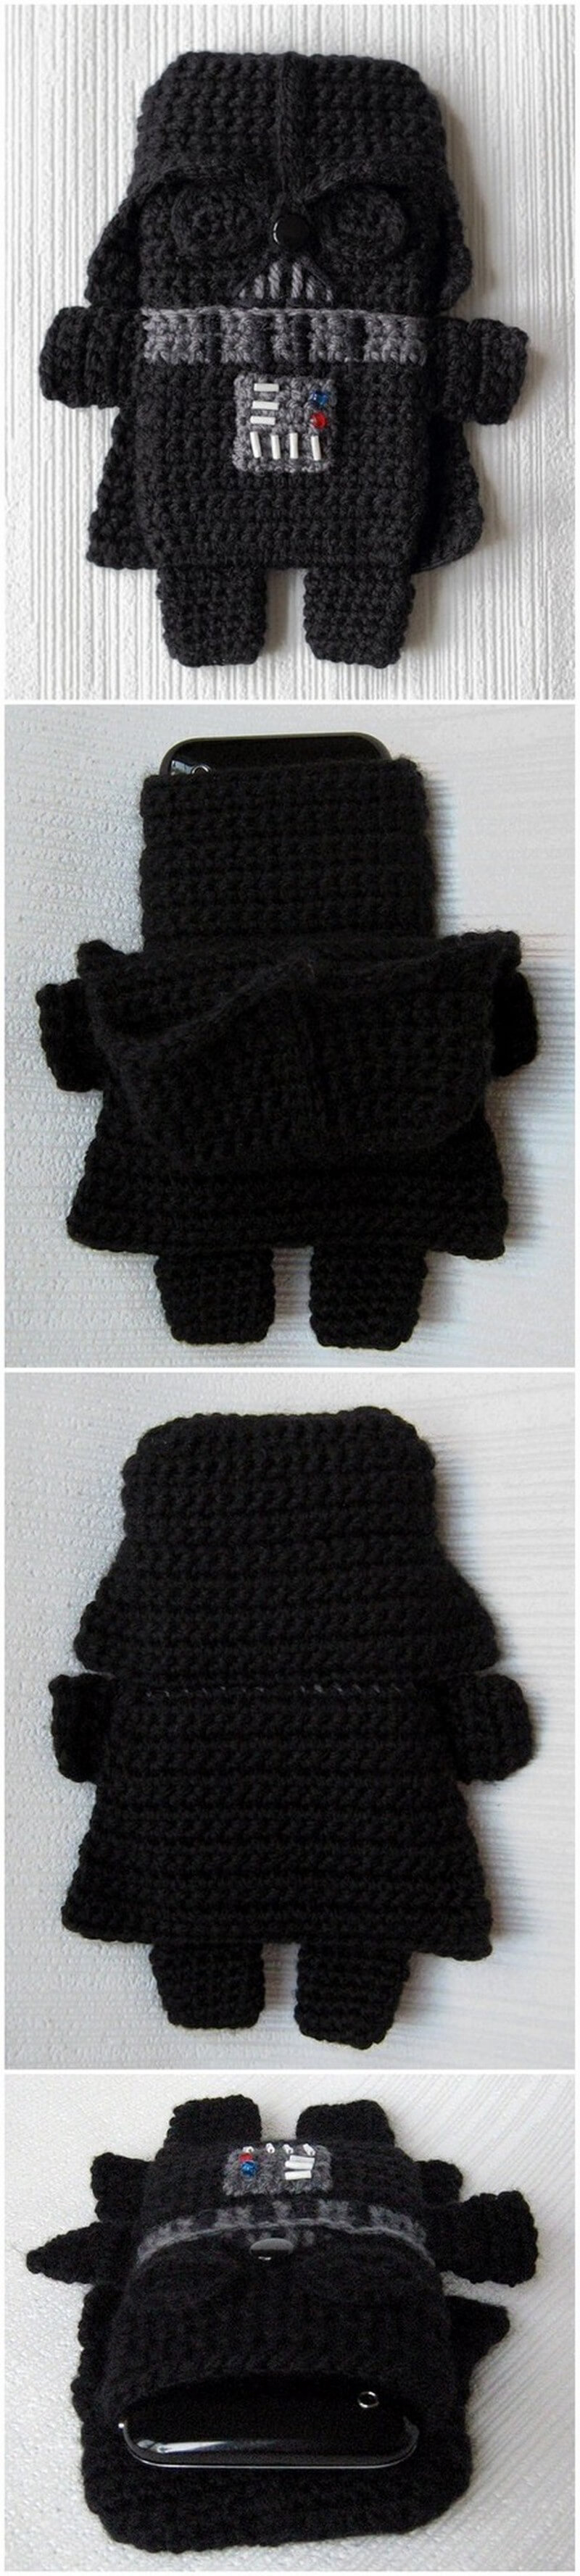 Crochet Mobile Cover Pattern (21)